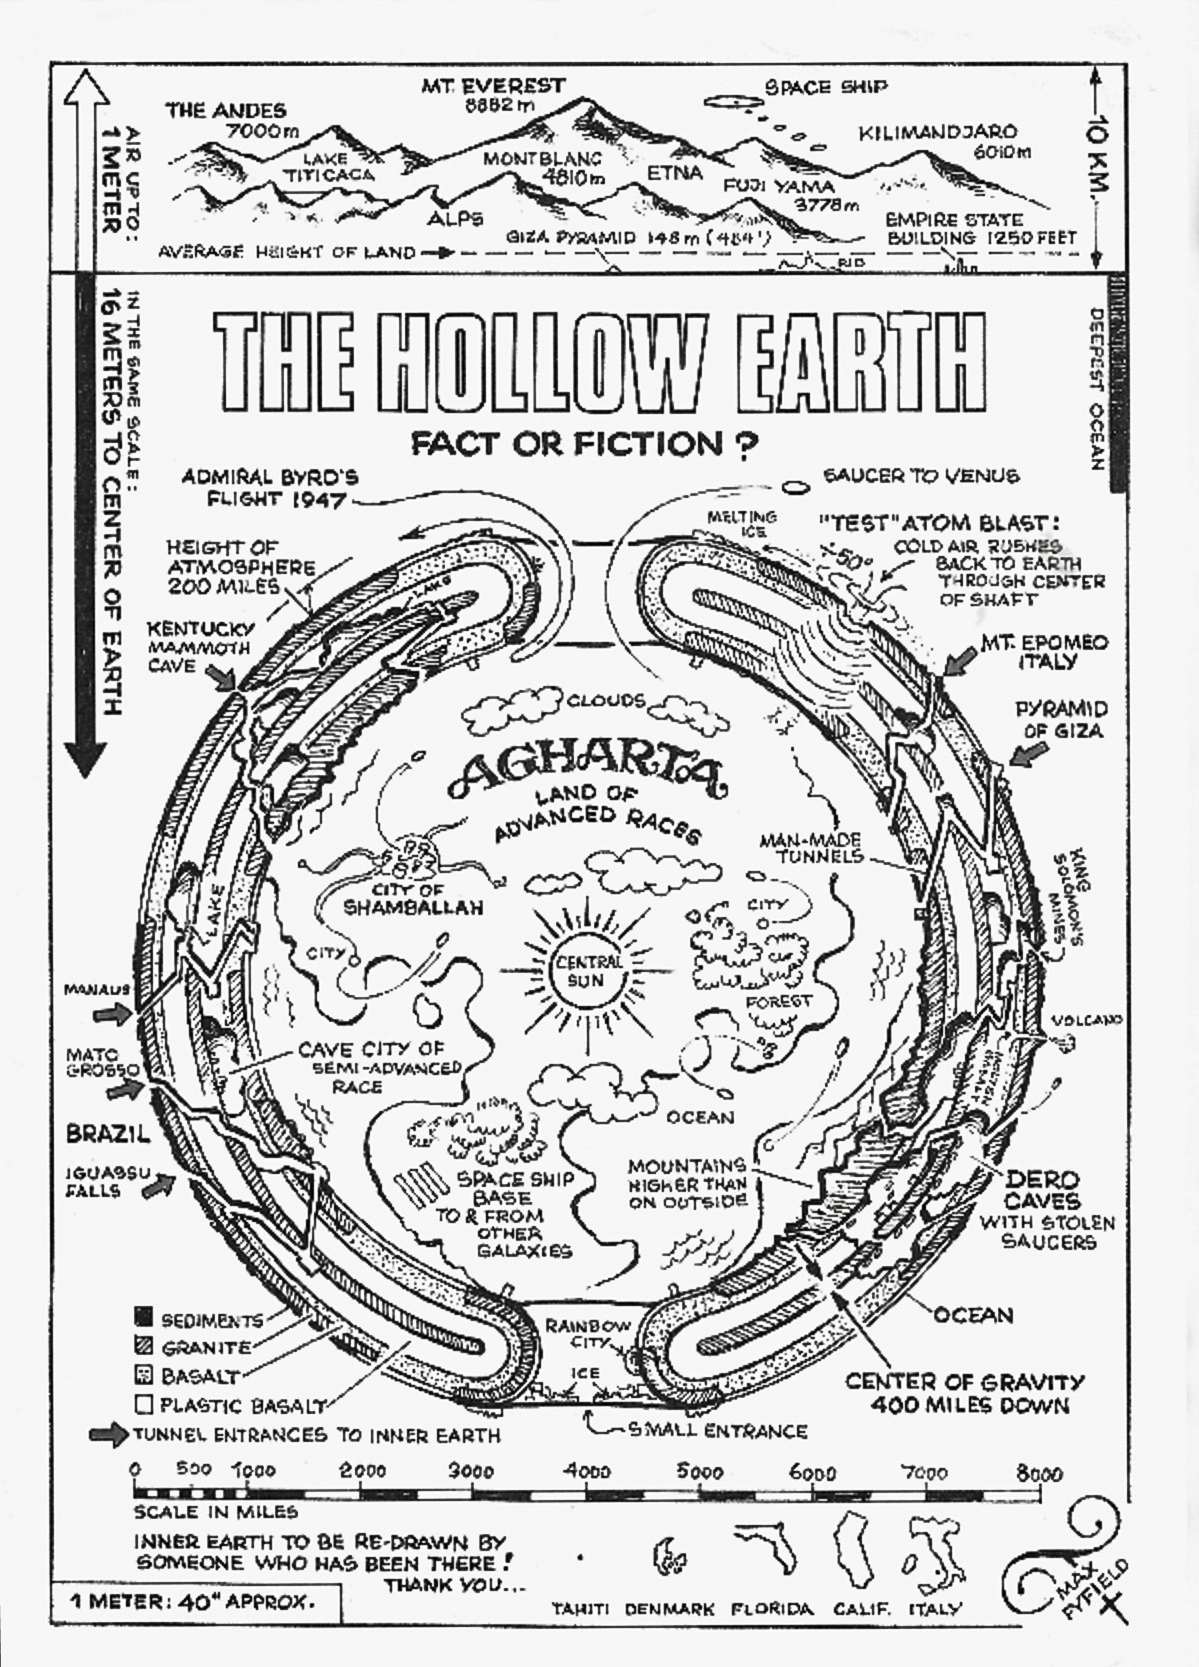 ღრუ დედამიწის რუკა მაქს ფაიფილდის მიერ